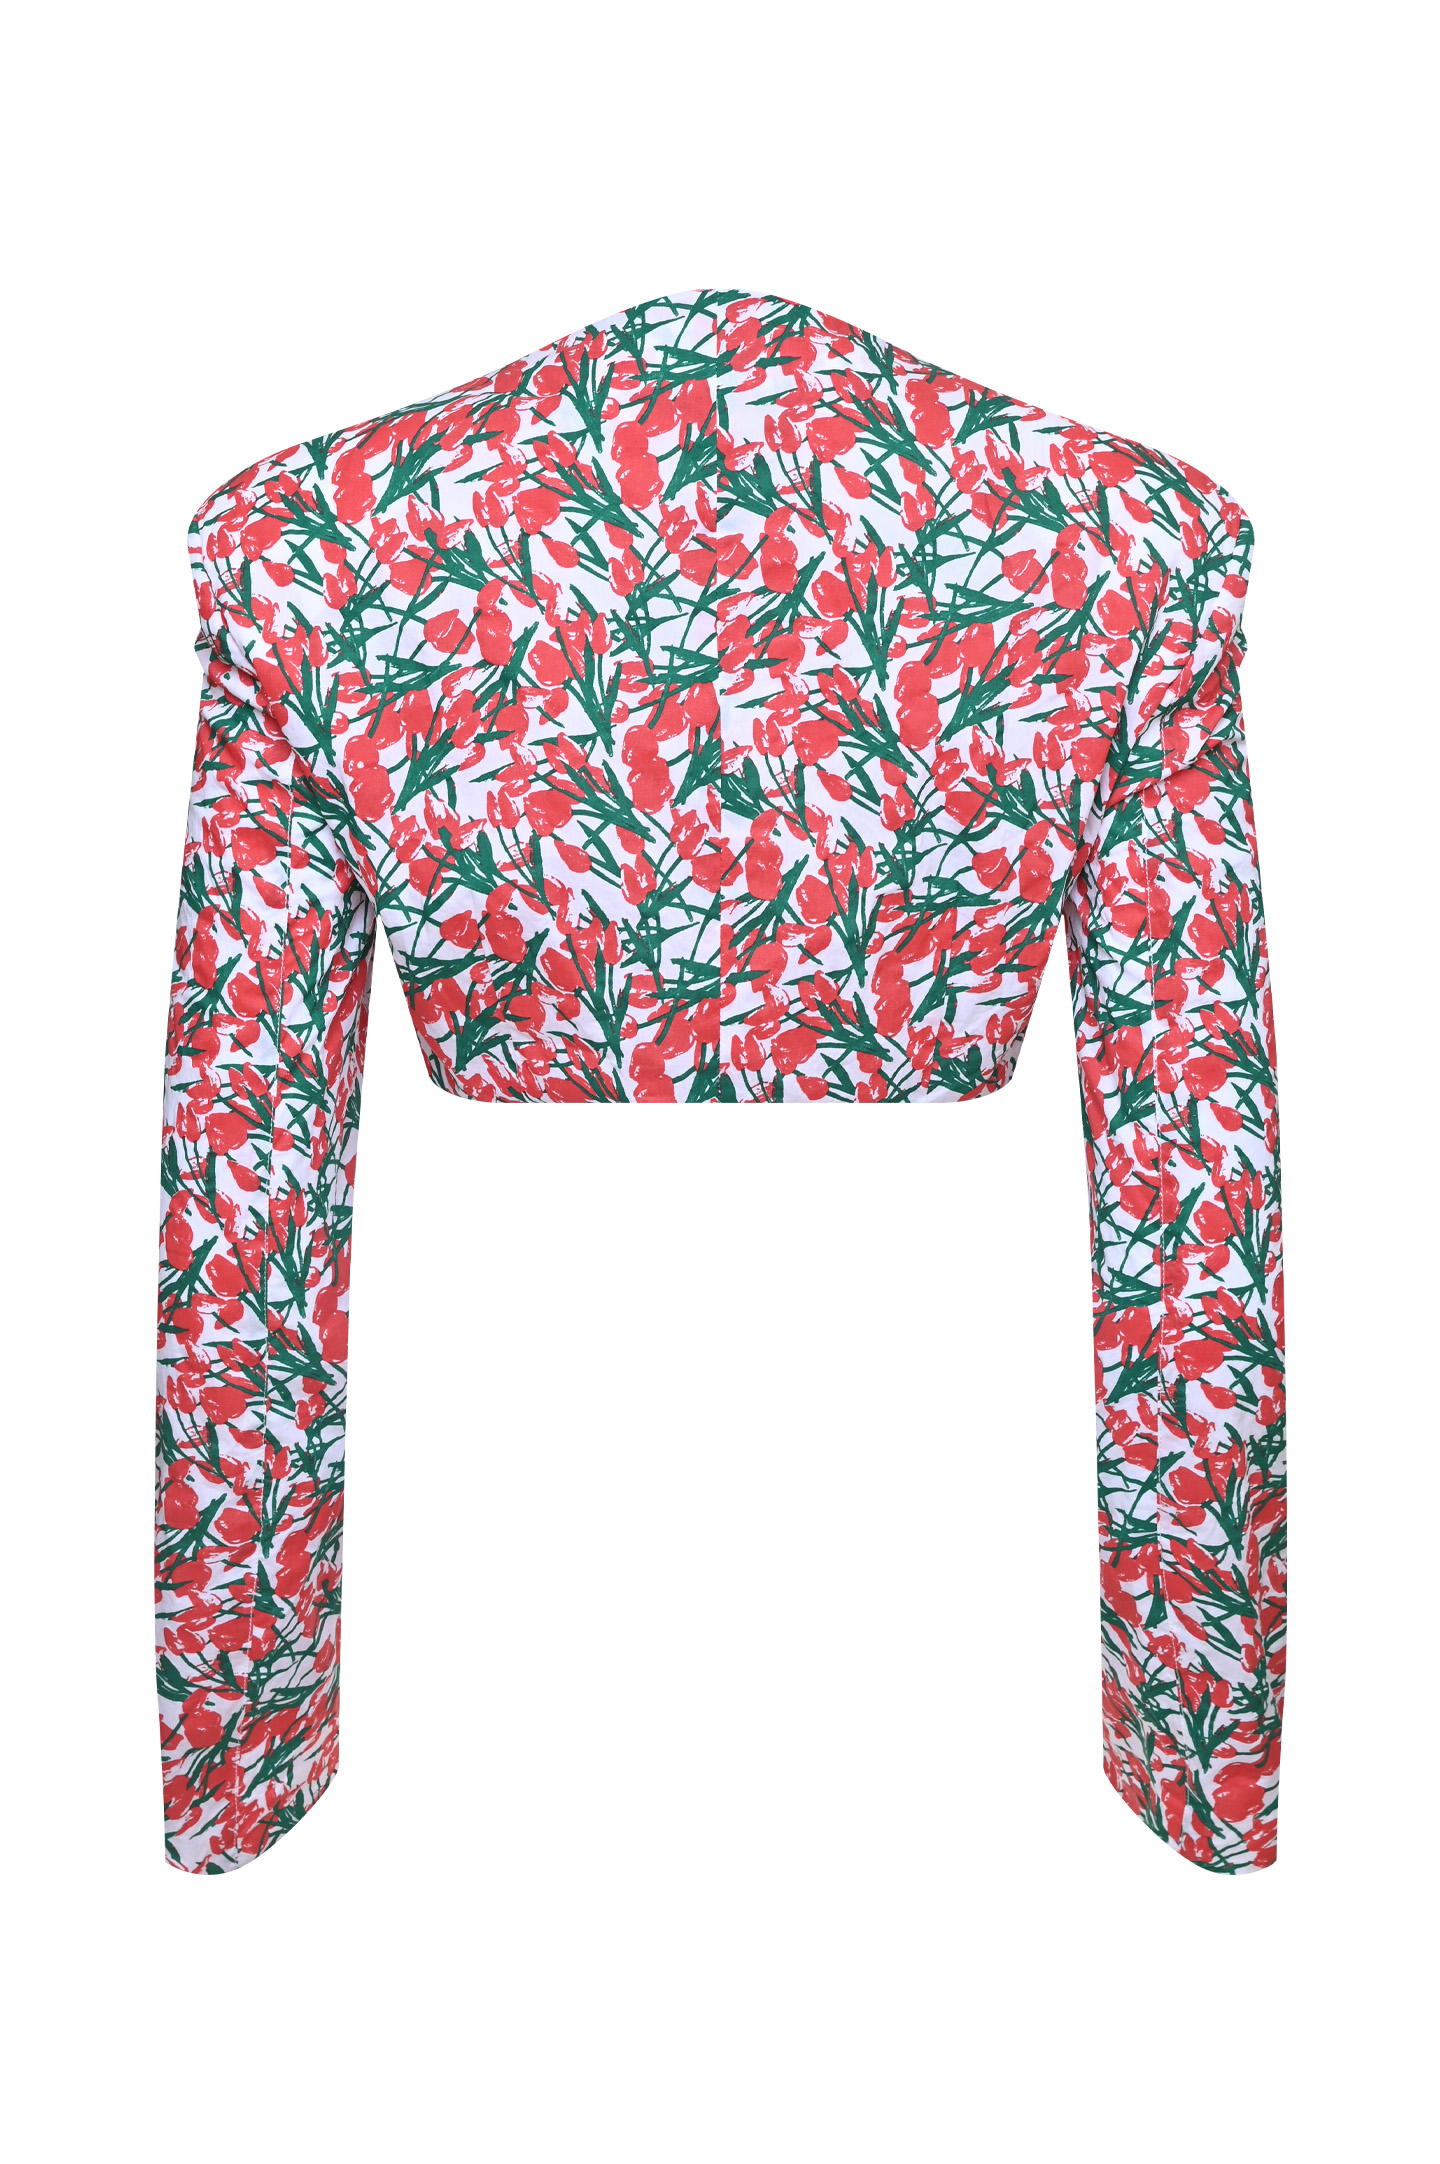 Блуза PHILOSOPHY DI LORENZO SERAFINI A0213 737, цвет: Разноцветный, Женский